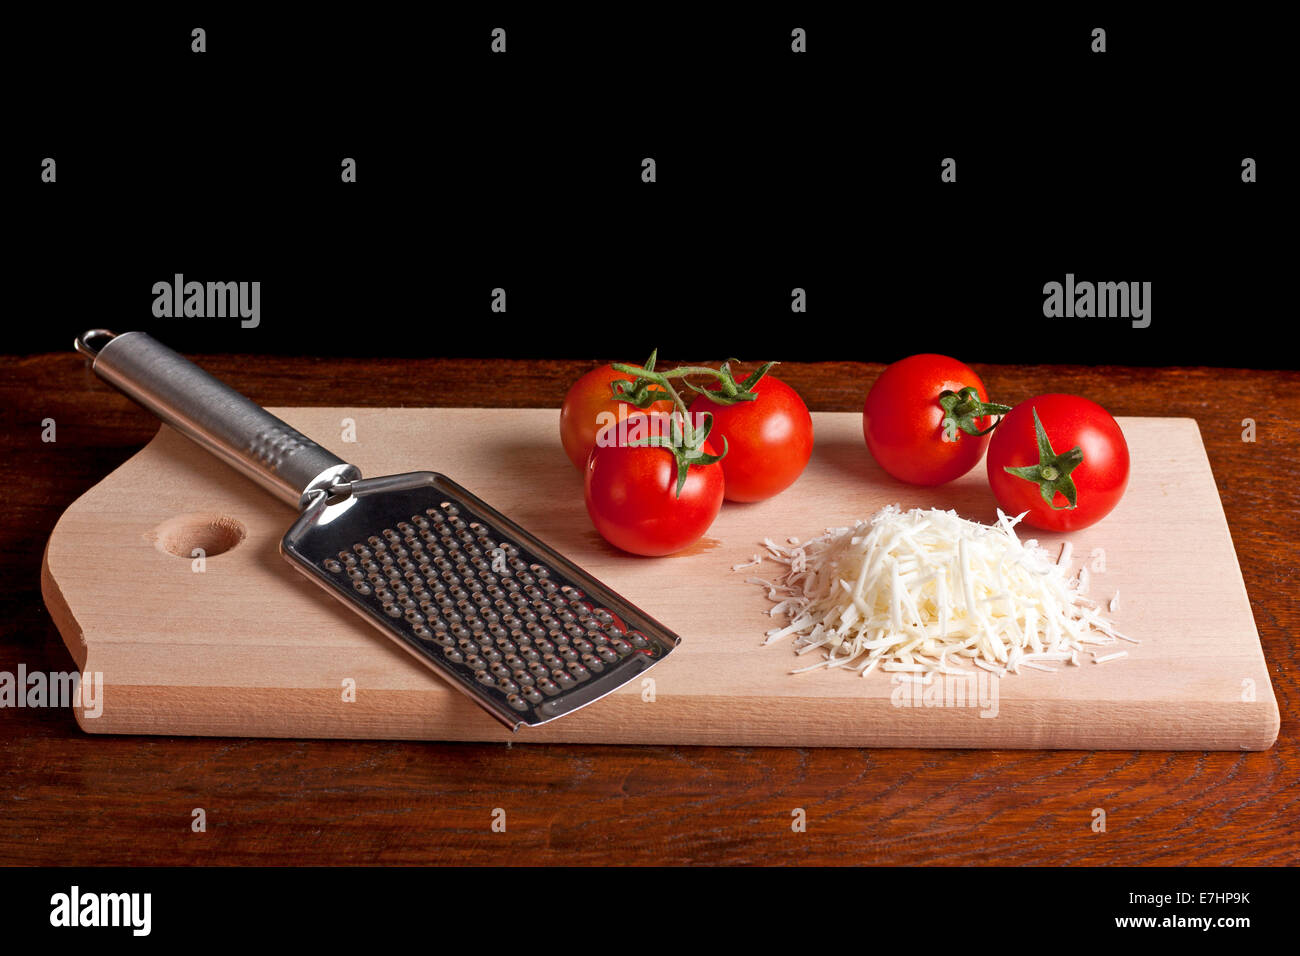 Râpe à fromage râpé, tomate rouge et sur un bureau en bois avec fond noir Banque D'Images